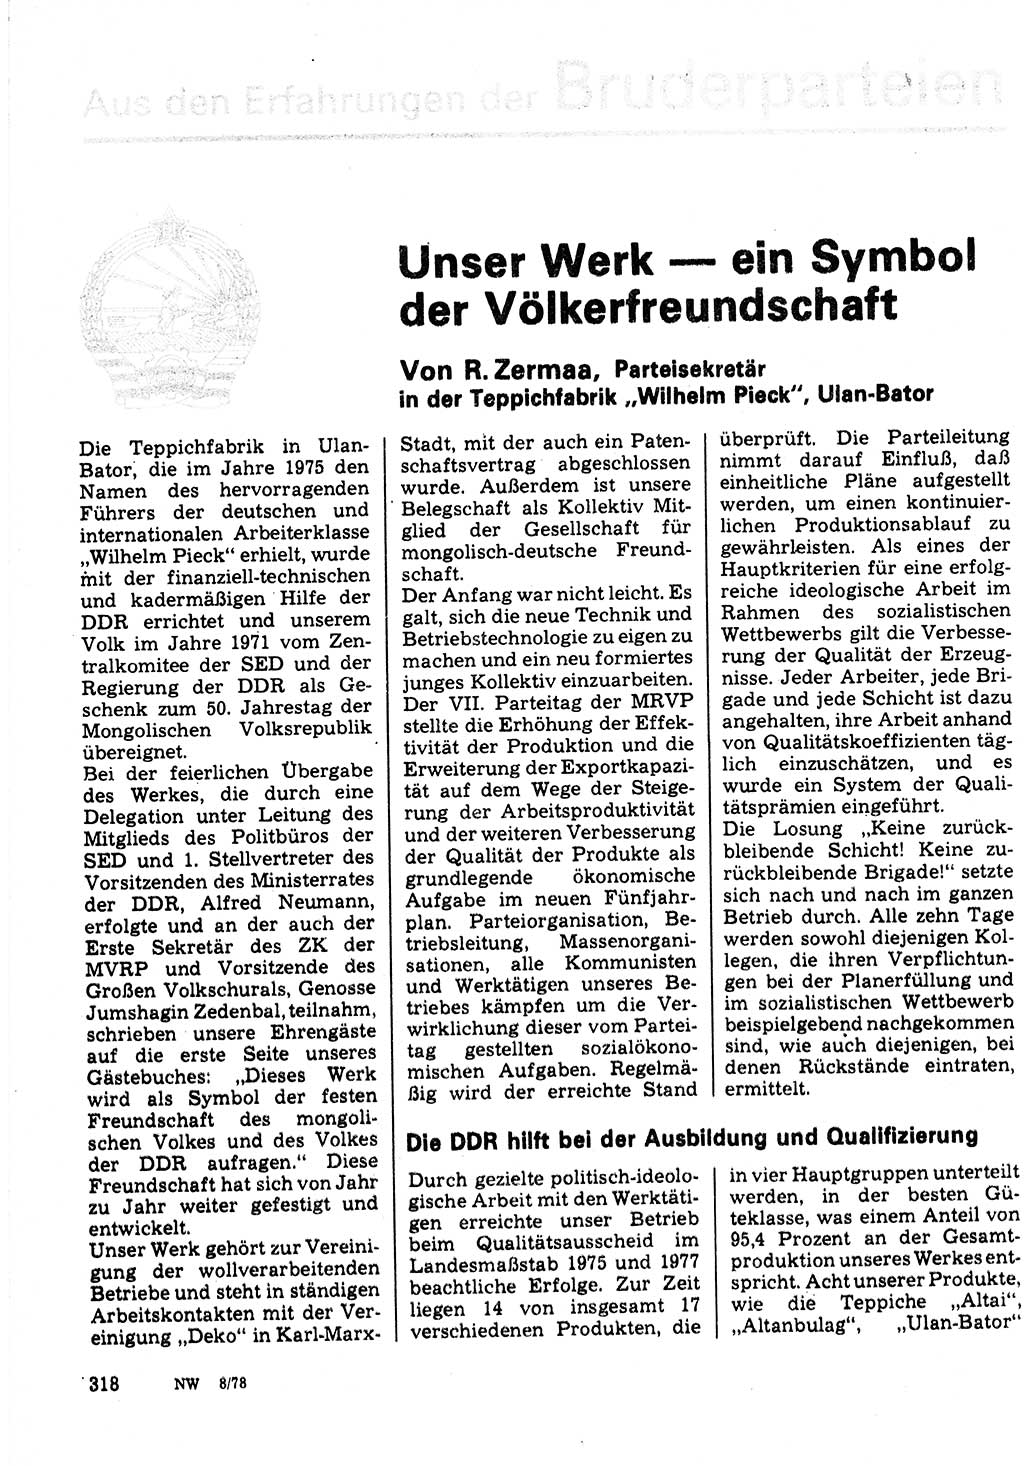 Neuer Weg (NW), Organ des Zentralkomitees (ZK) der SED (Sozialistische Einheitspartei Deutschlands) für Fragen des Parteilebens, 33. Jahrgang [Deutsche Demokratische Republik (DDR)] 1978, Seite 318 (NW ZK SED DDR 1978, S. 318)